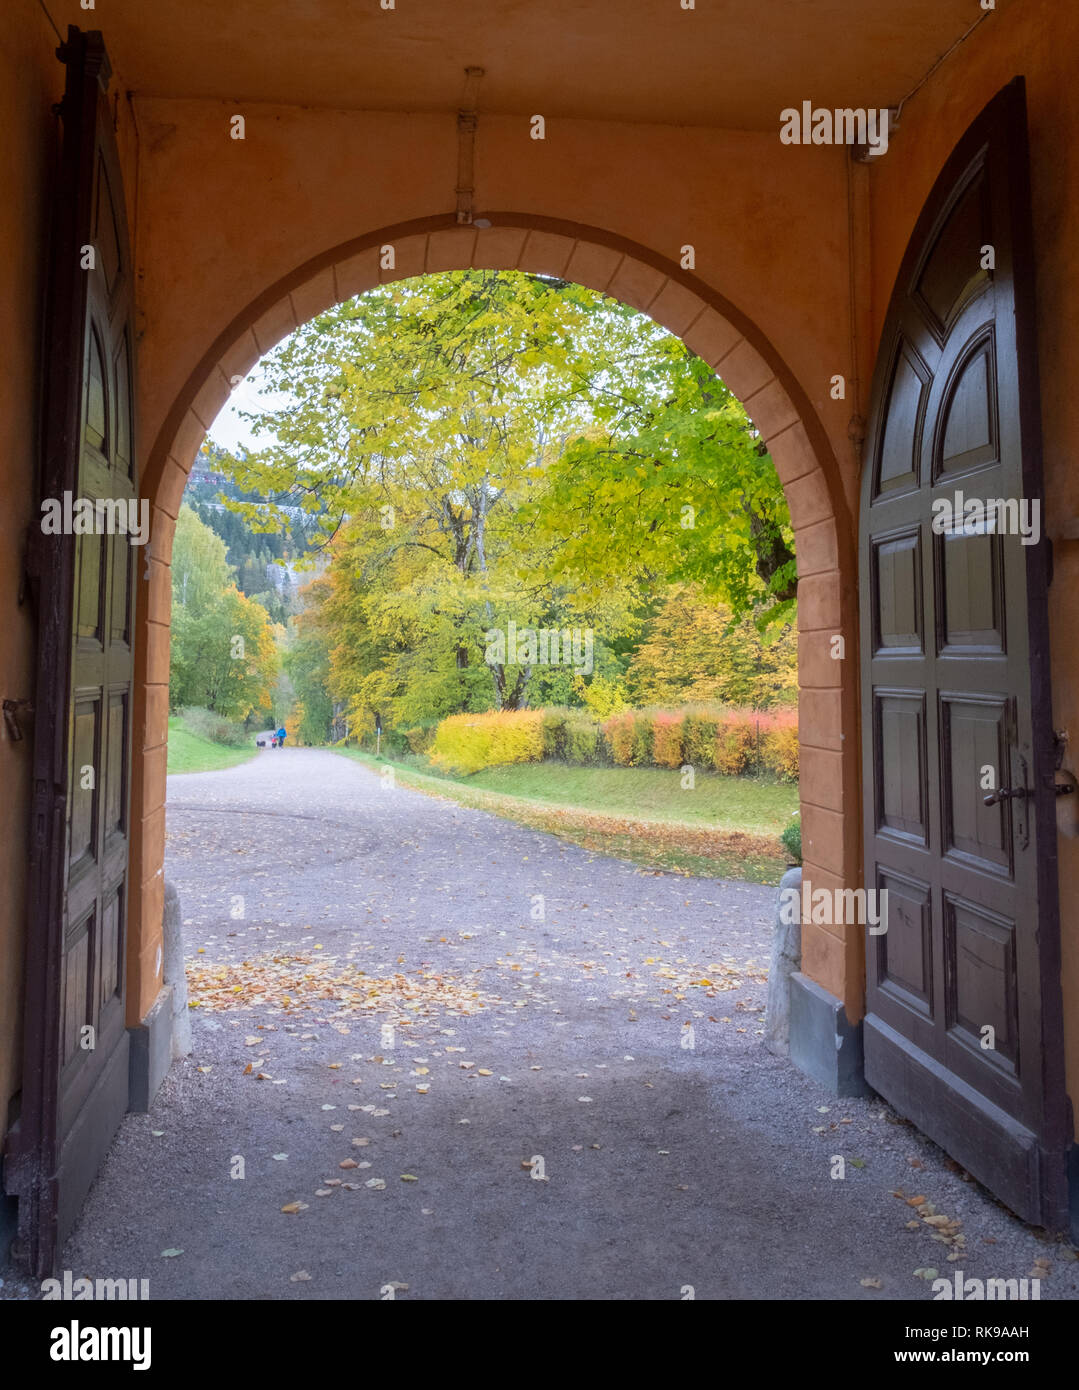 El portón se abre a una vista del parque de otoño Foto de stock